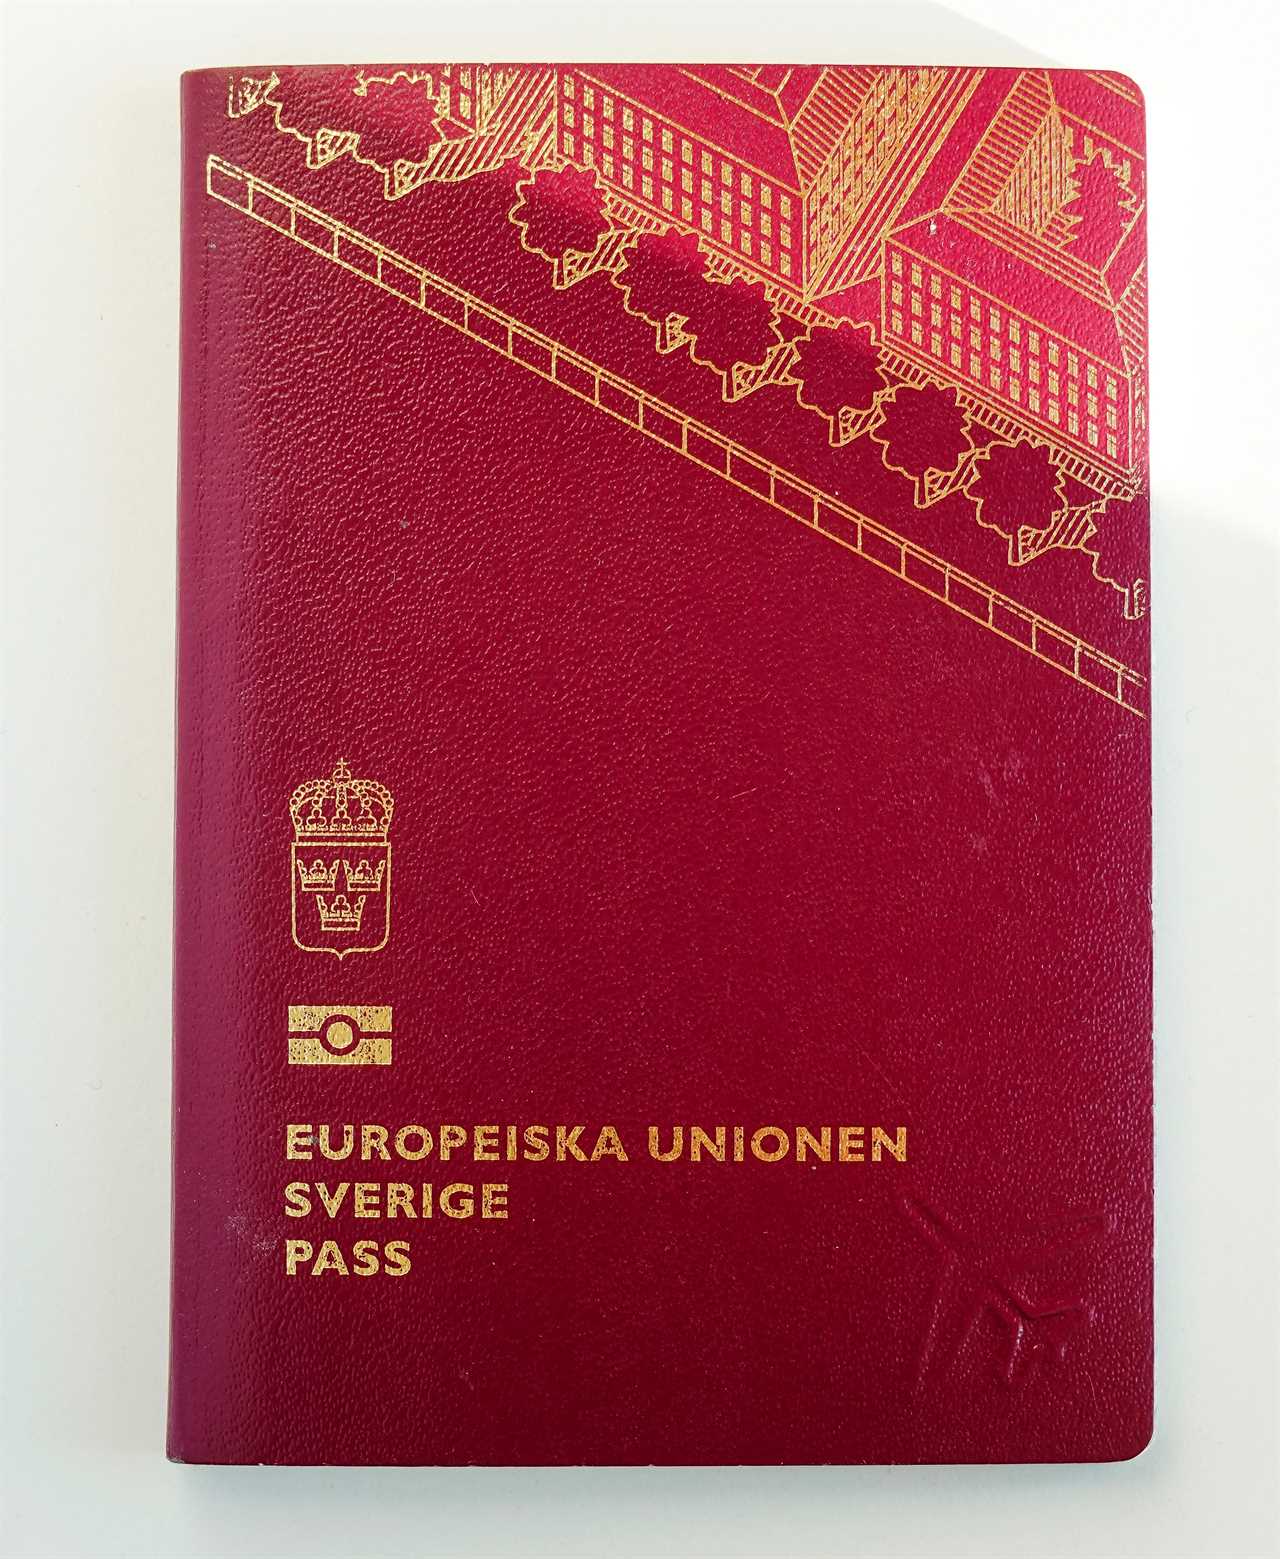 Passport regulations can become a bureaucratic nightmare